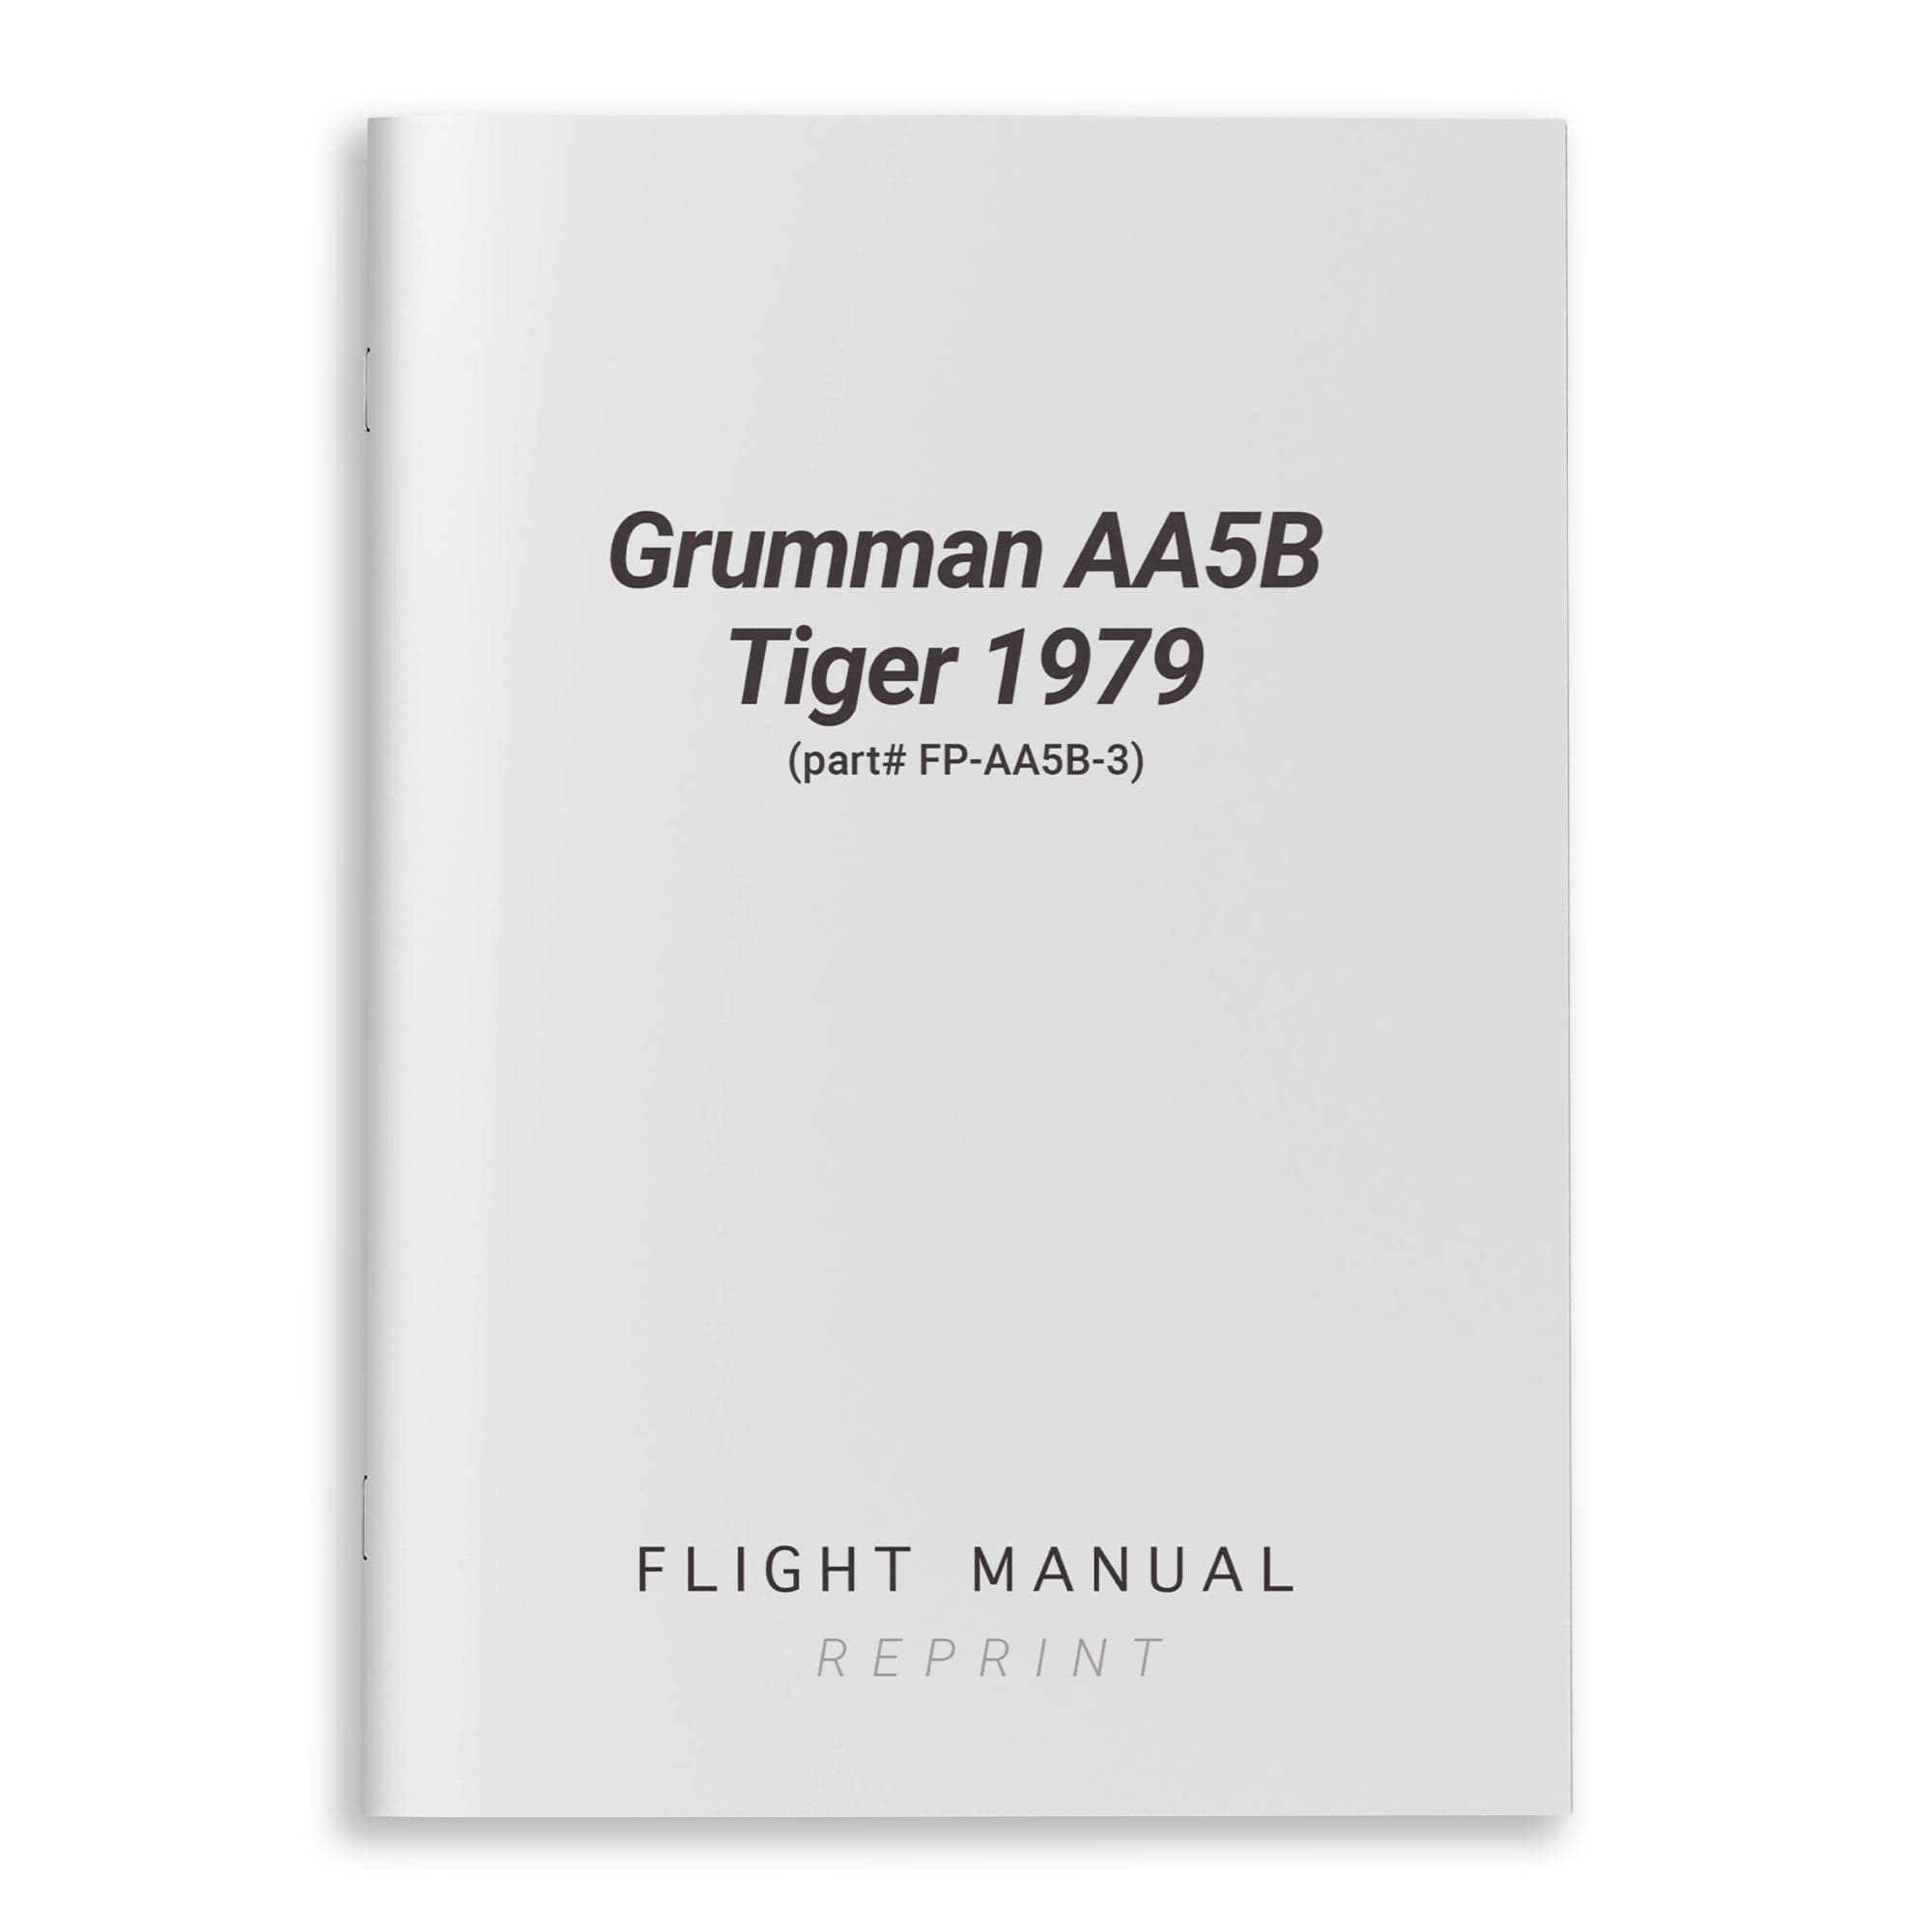 Grumman AA5B Tiger 1979 Flight Manual (part# FP-AA5B-3)